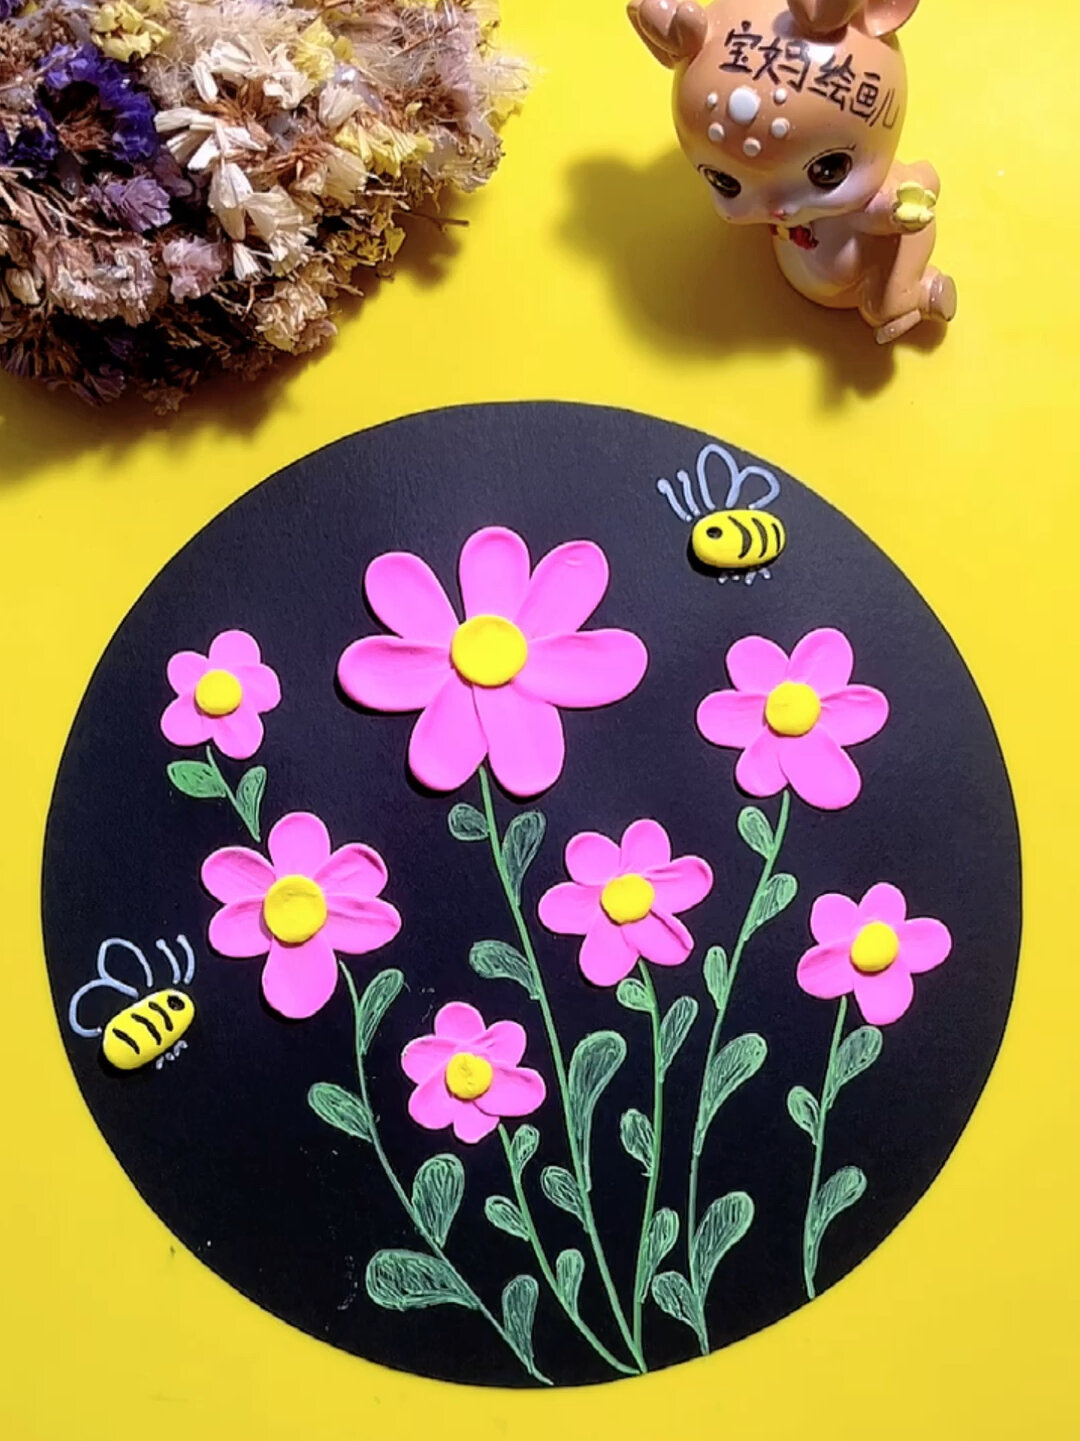 幼儿园手工:粘土小圆按压花瓣儿 简单画幅花